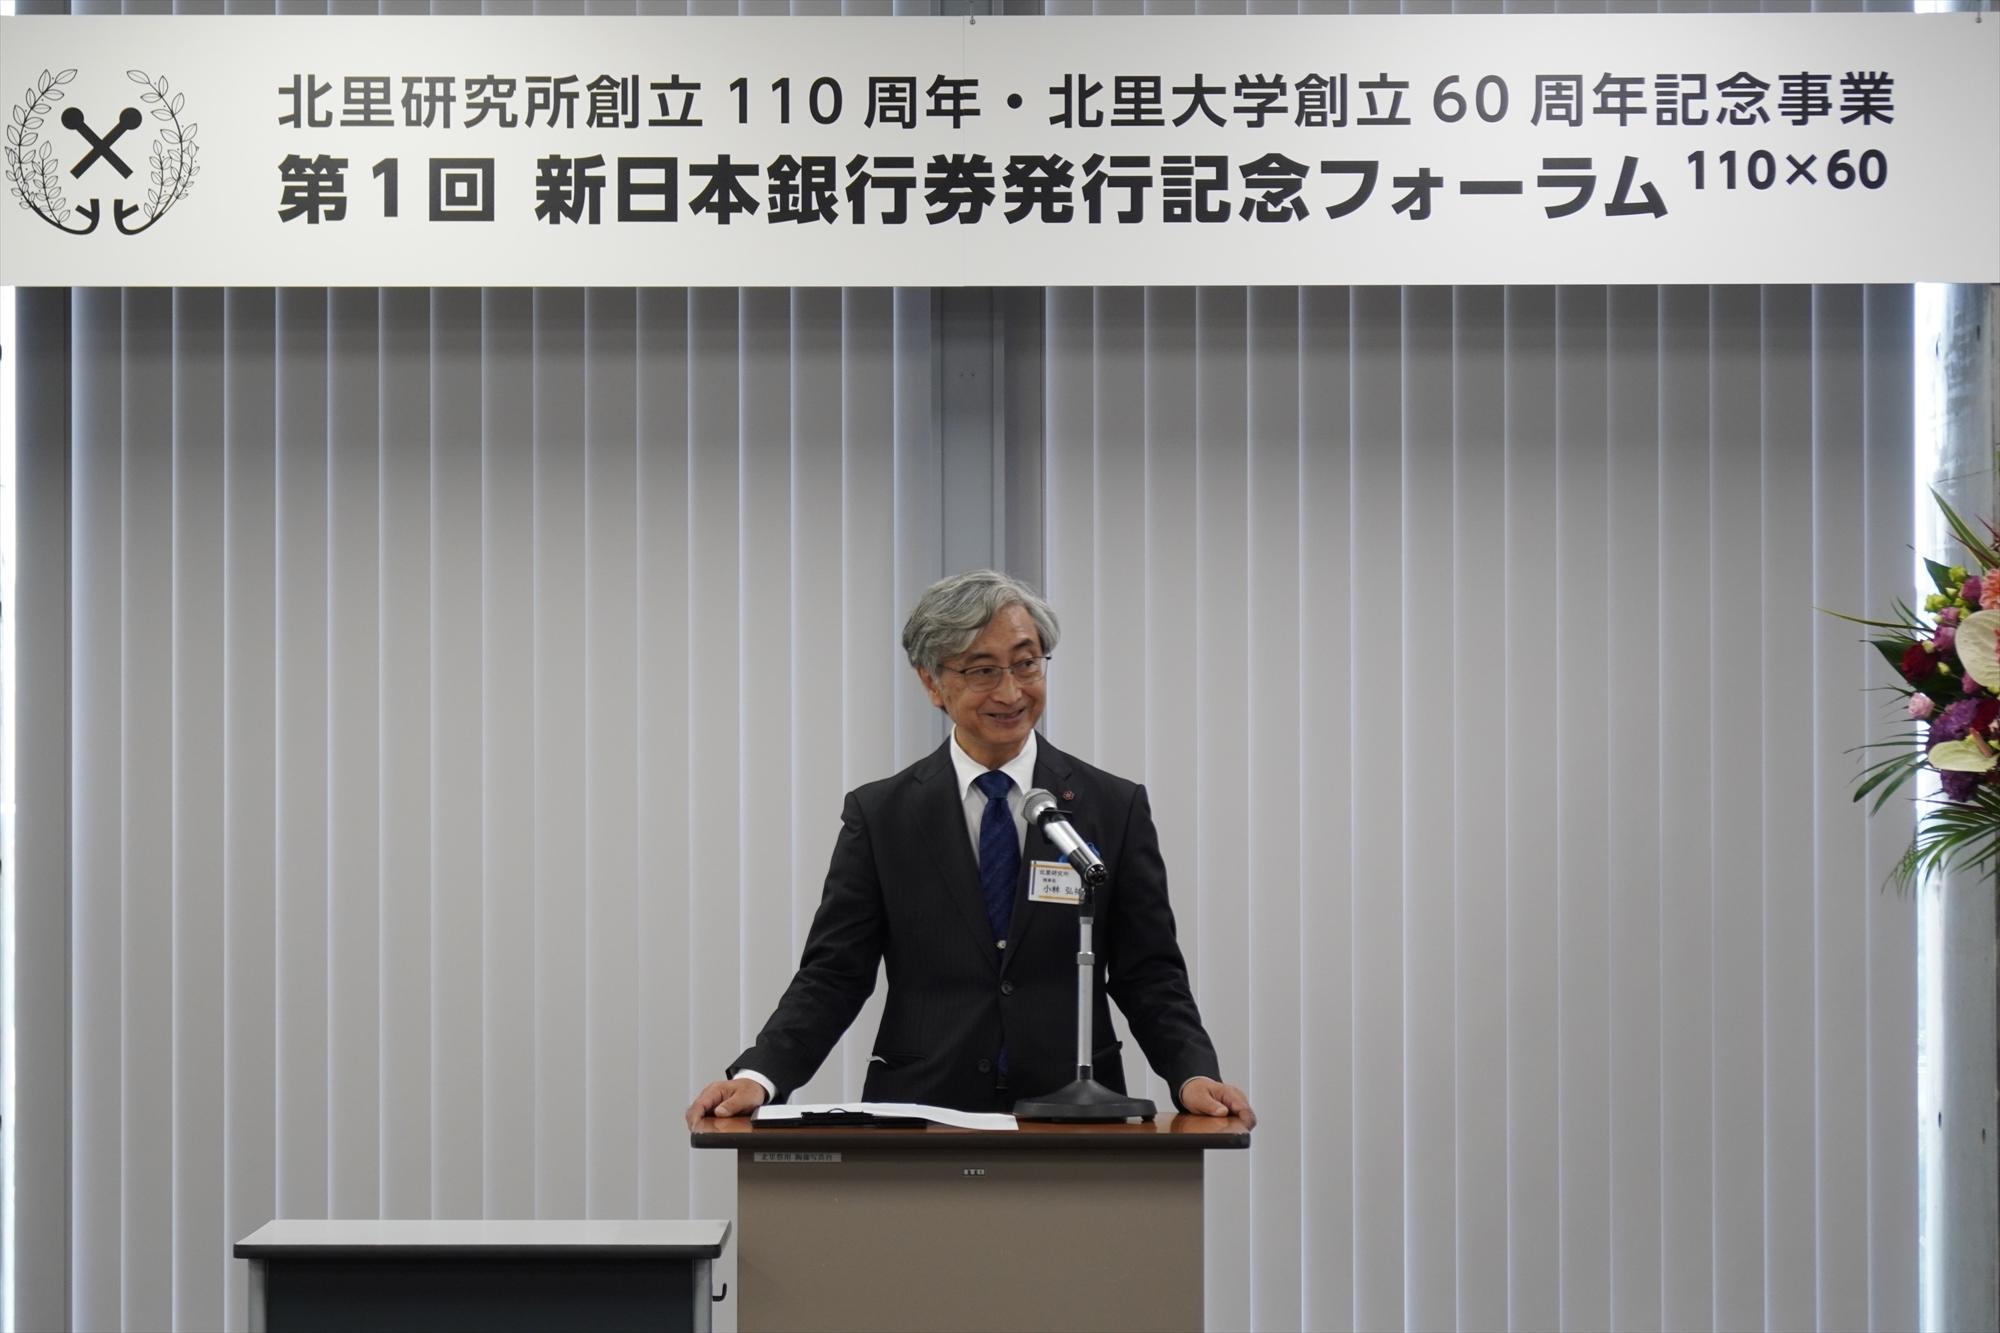 北里研究所が「新日本銀行券発行記念フォーラム110×60」を開催しました